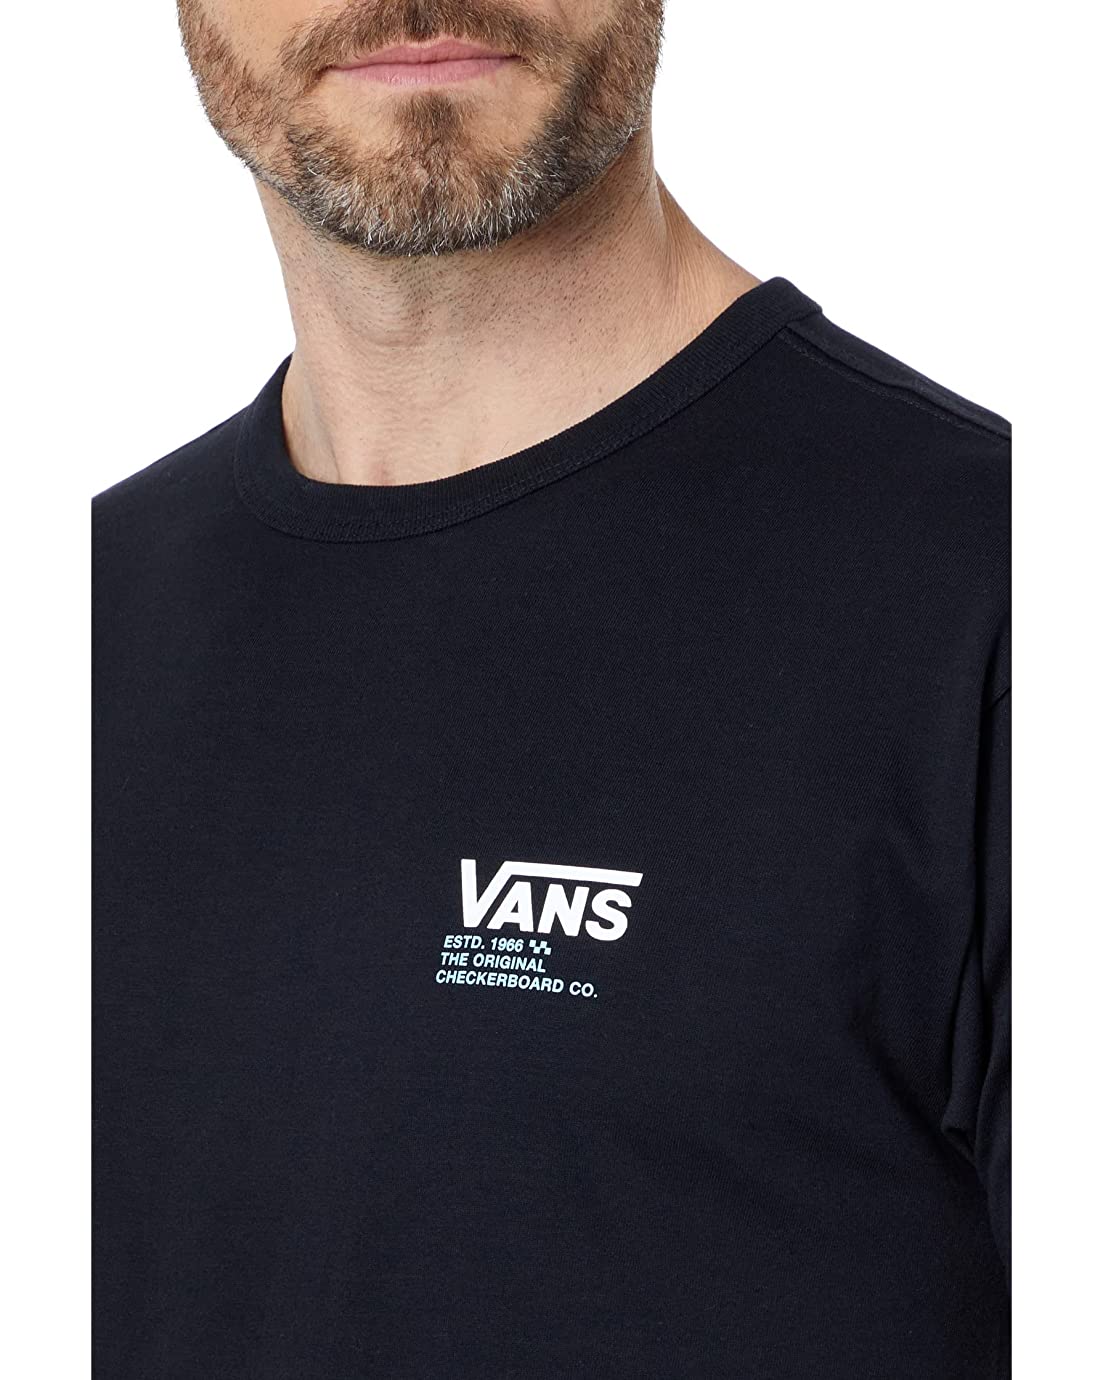 Vans Men's Classic Short Sleeve Tee, (OTW OG Checker) Black